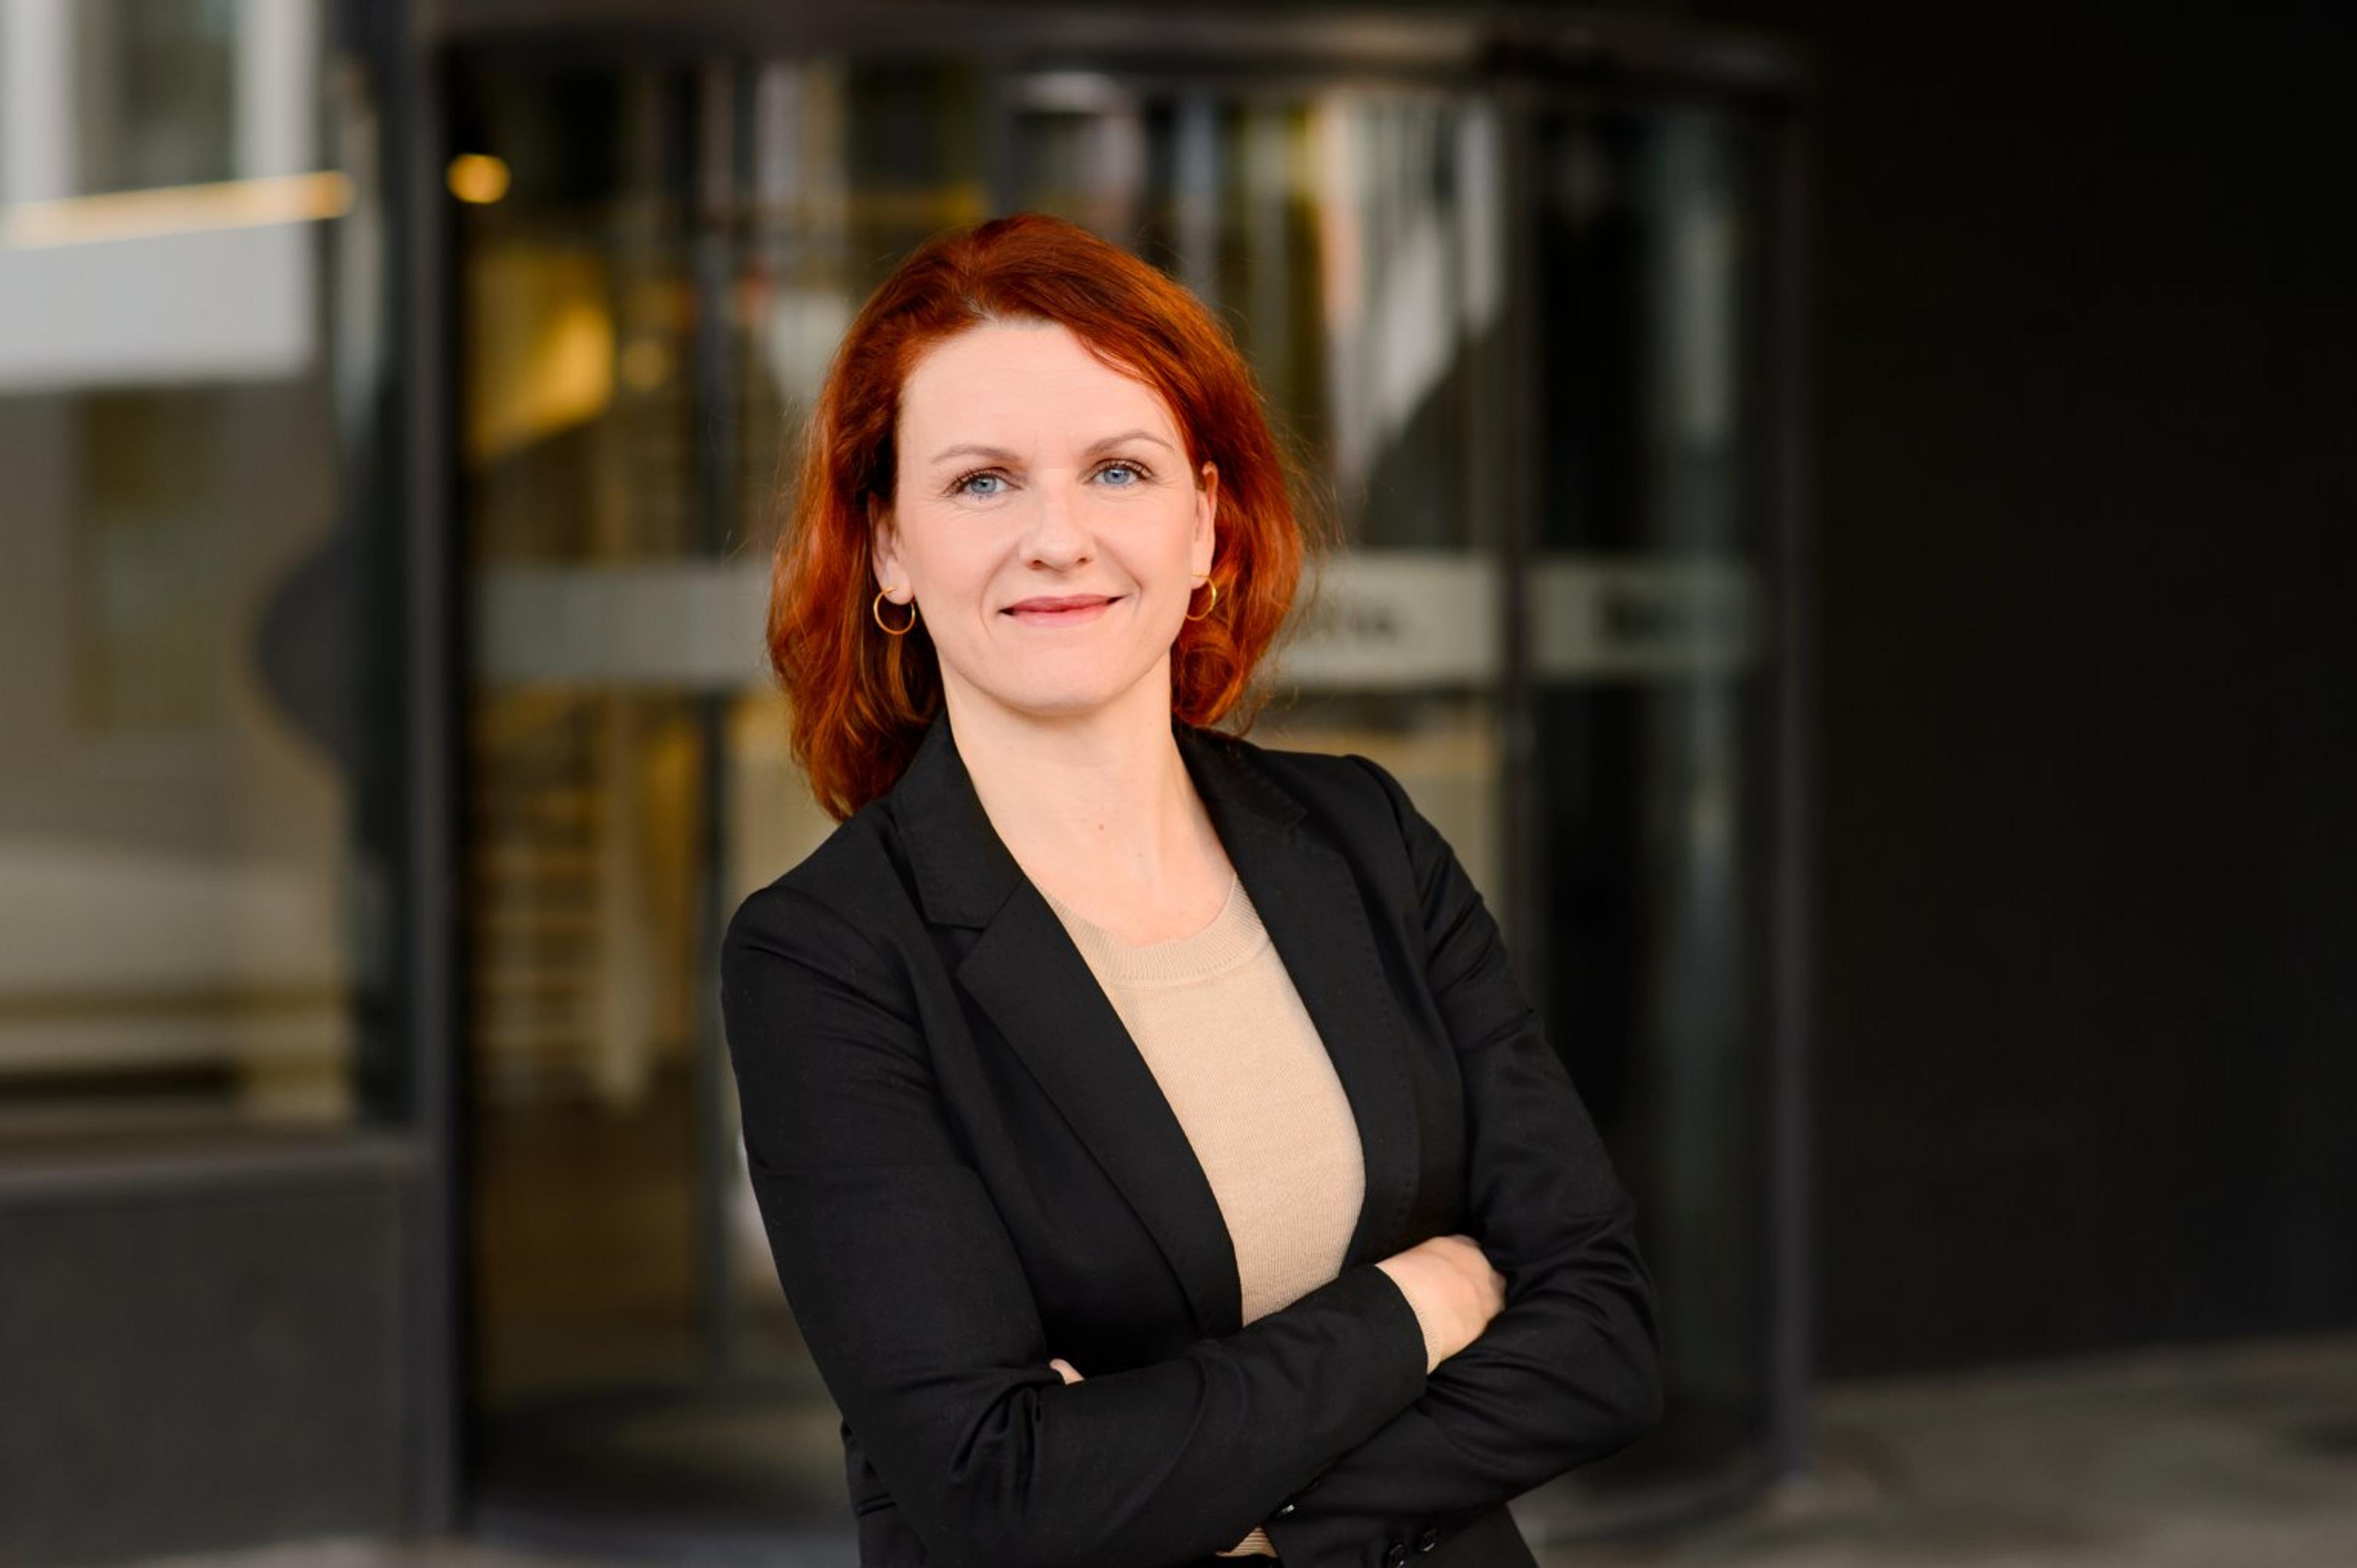 Rechtsanwältin Janine Hardi im Interview: Über ihre Erfahrungen als Investorenvertreterin in einer männerlastigen Finance-Welt